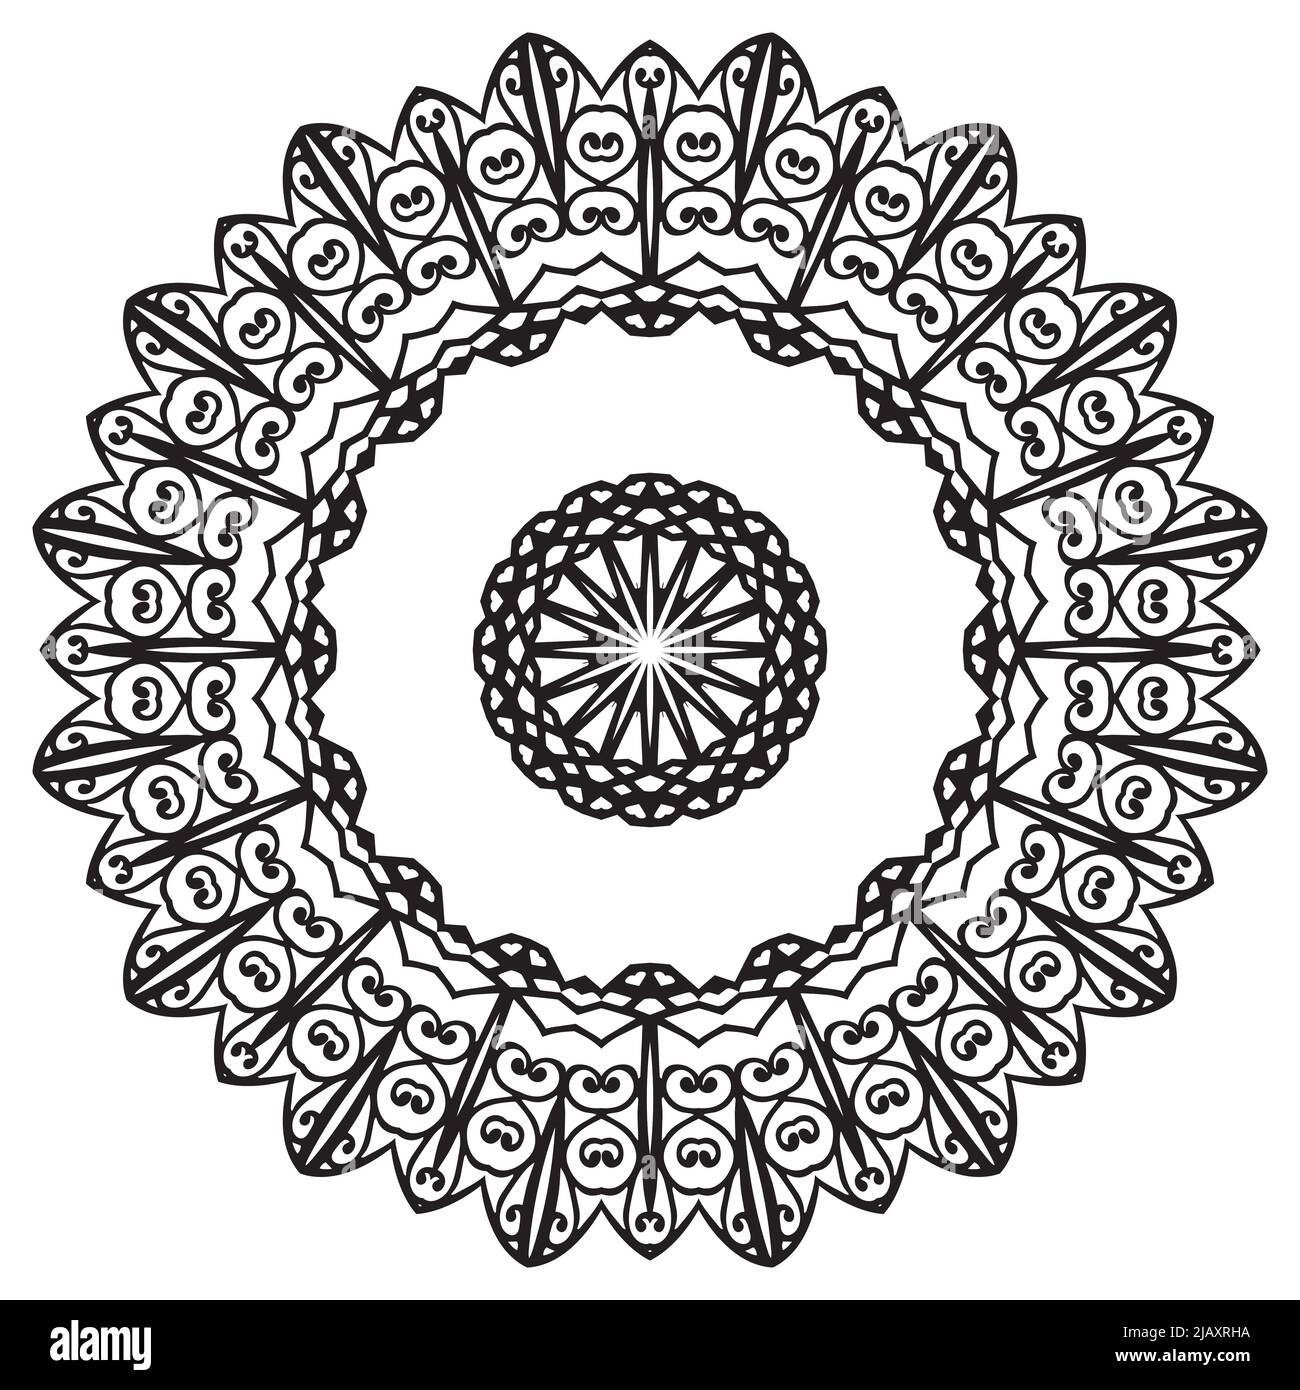 Mandala pattern coloring book wallpaper design Vector Image